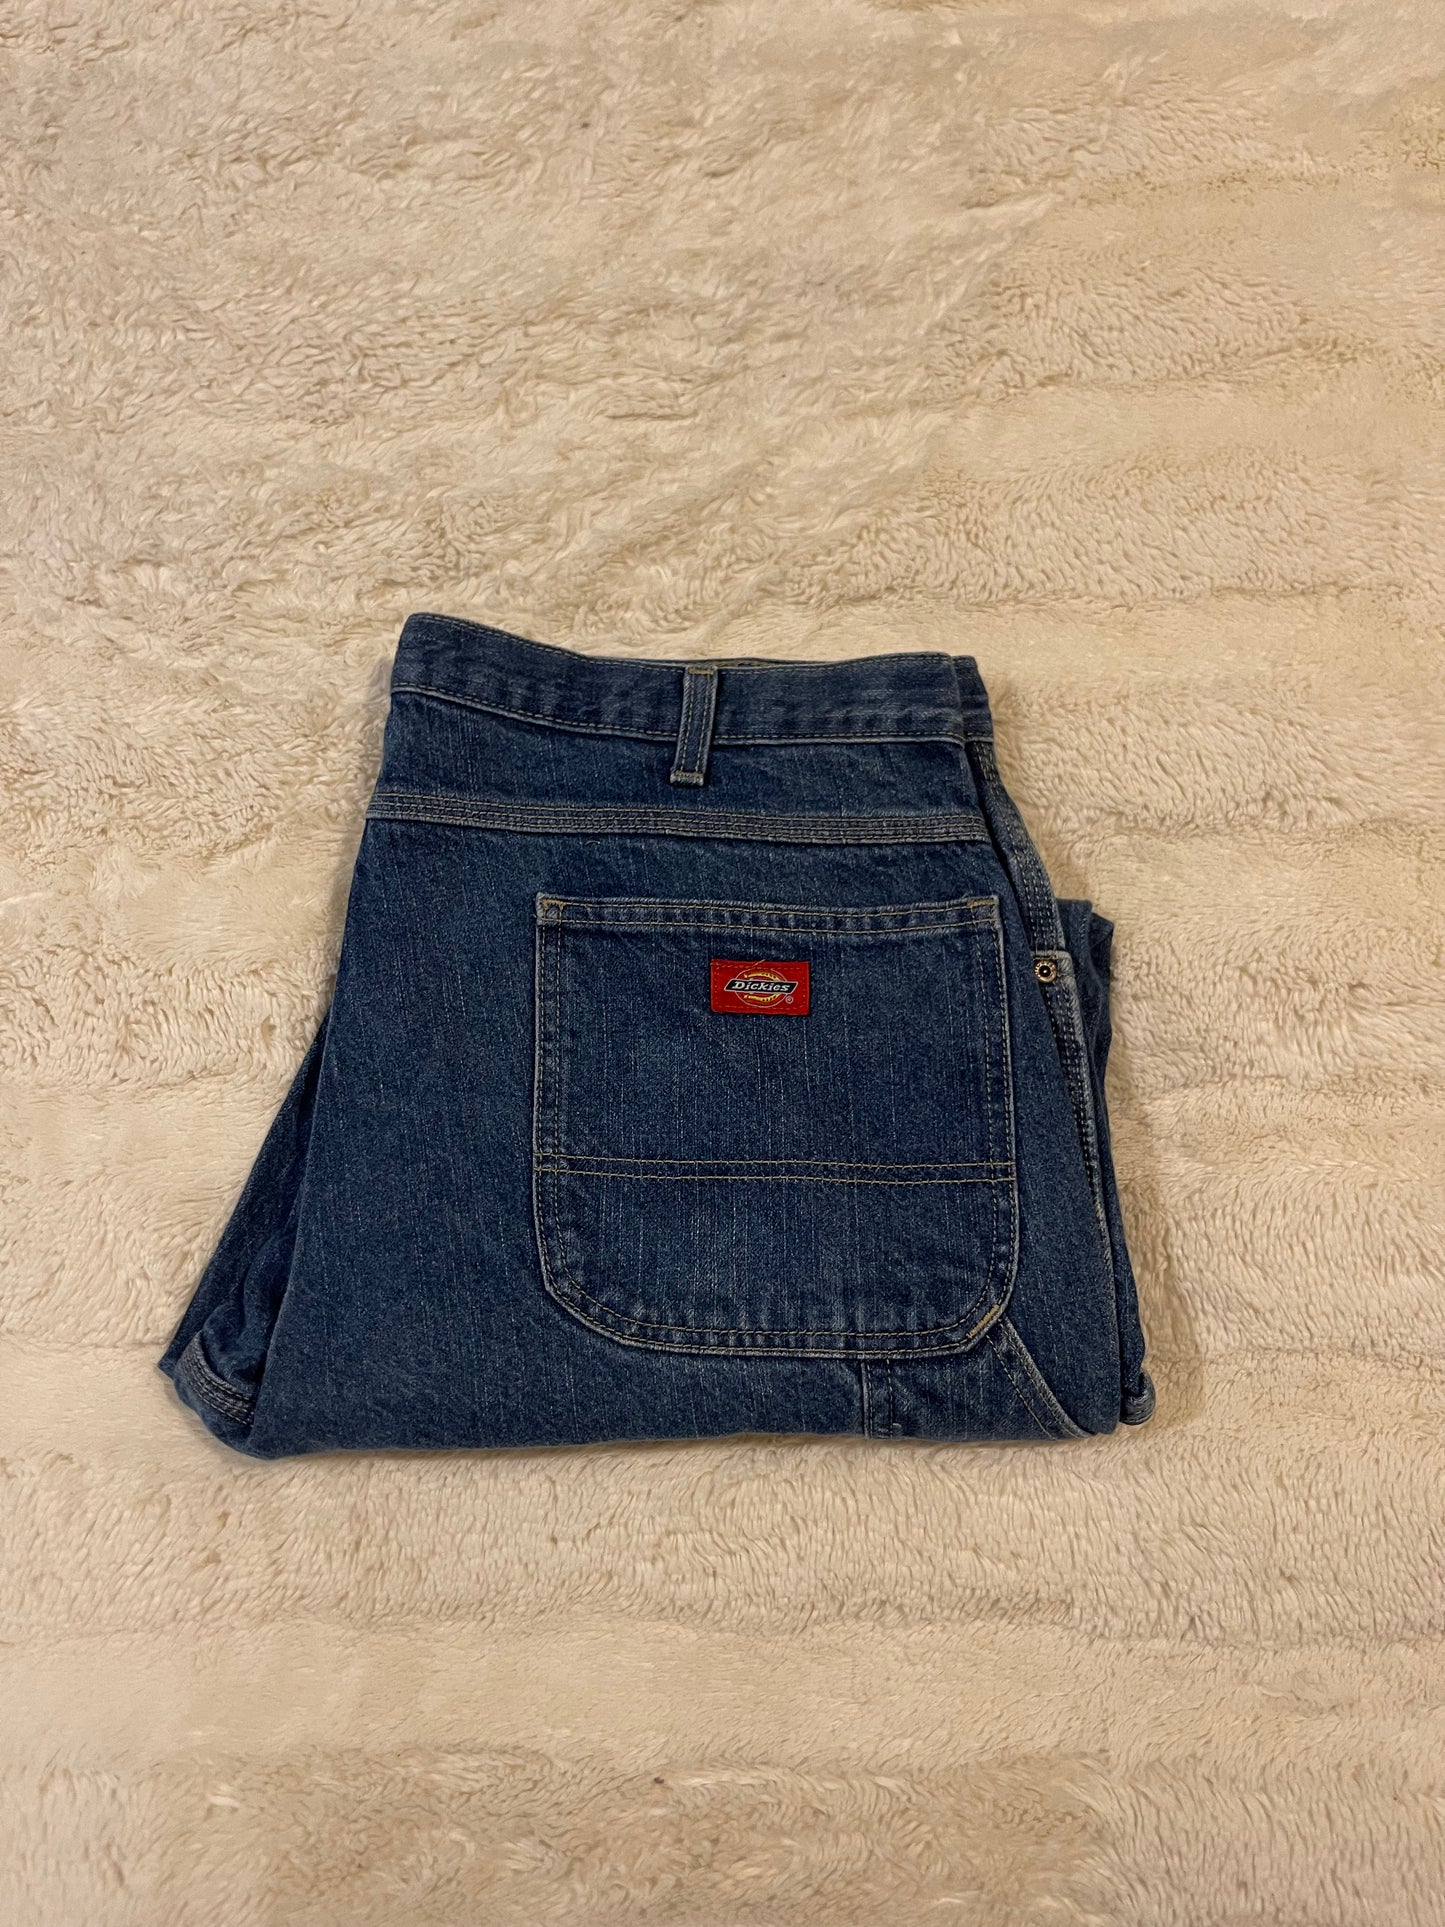 Dickies Jeans (38x30)